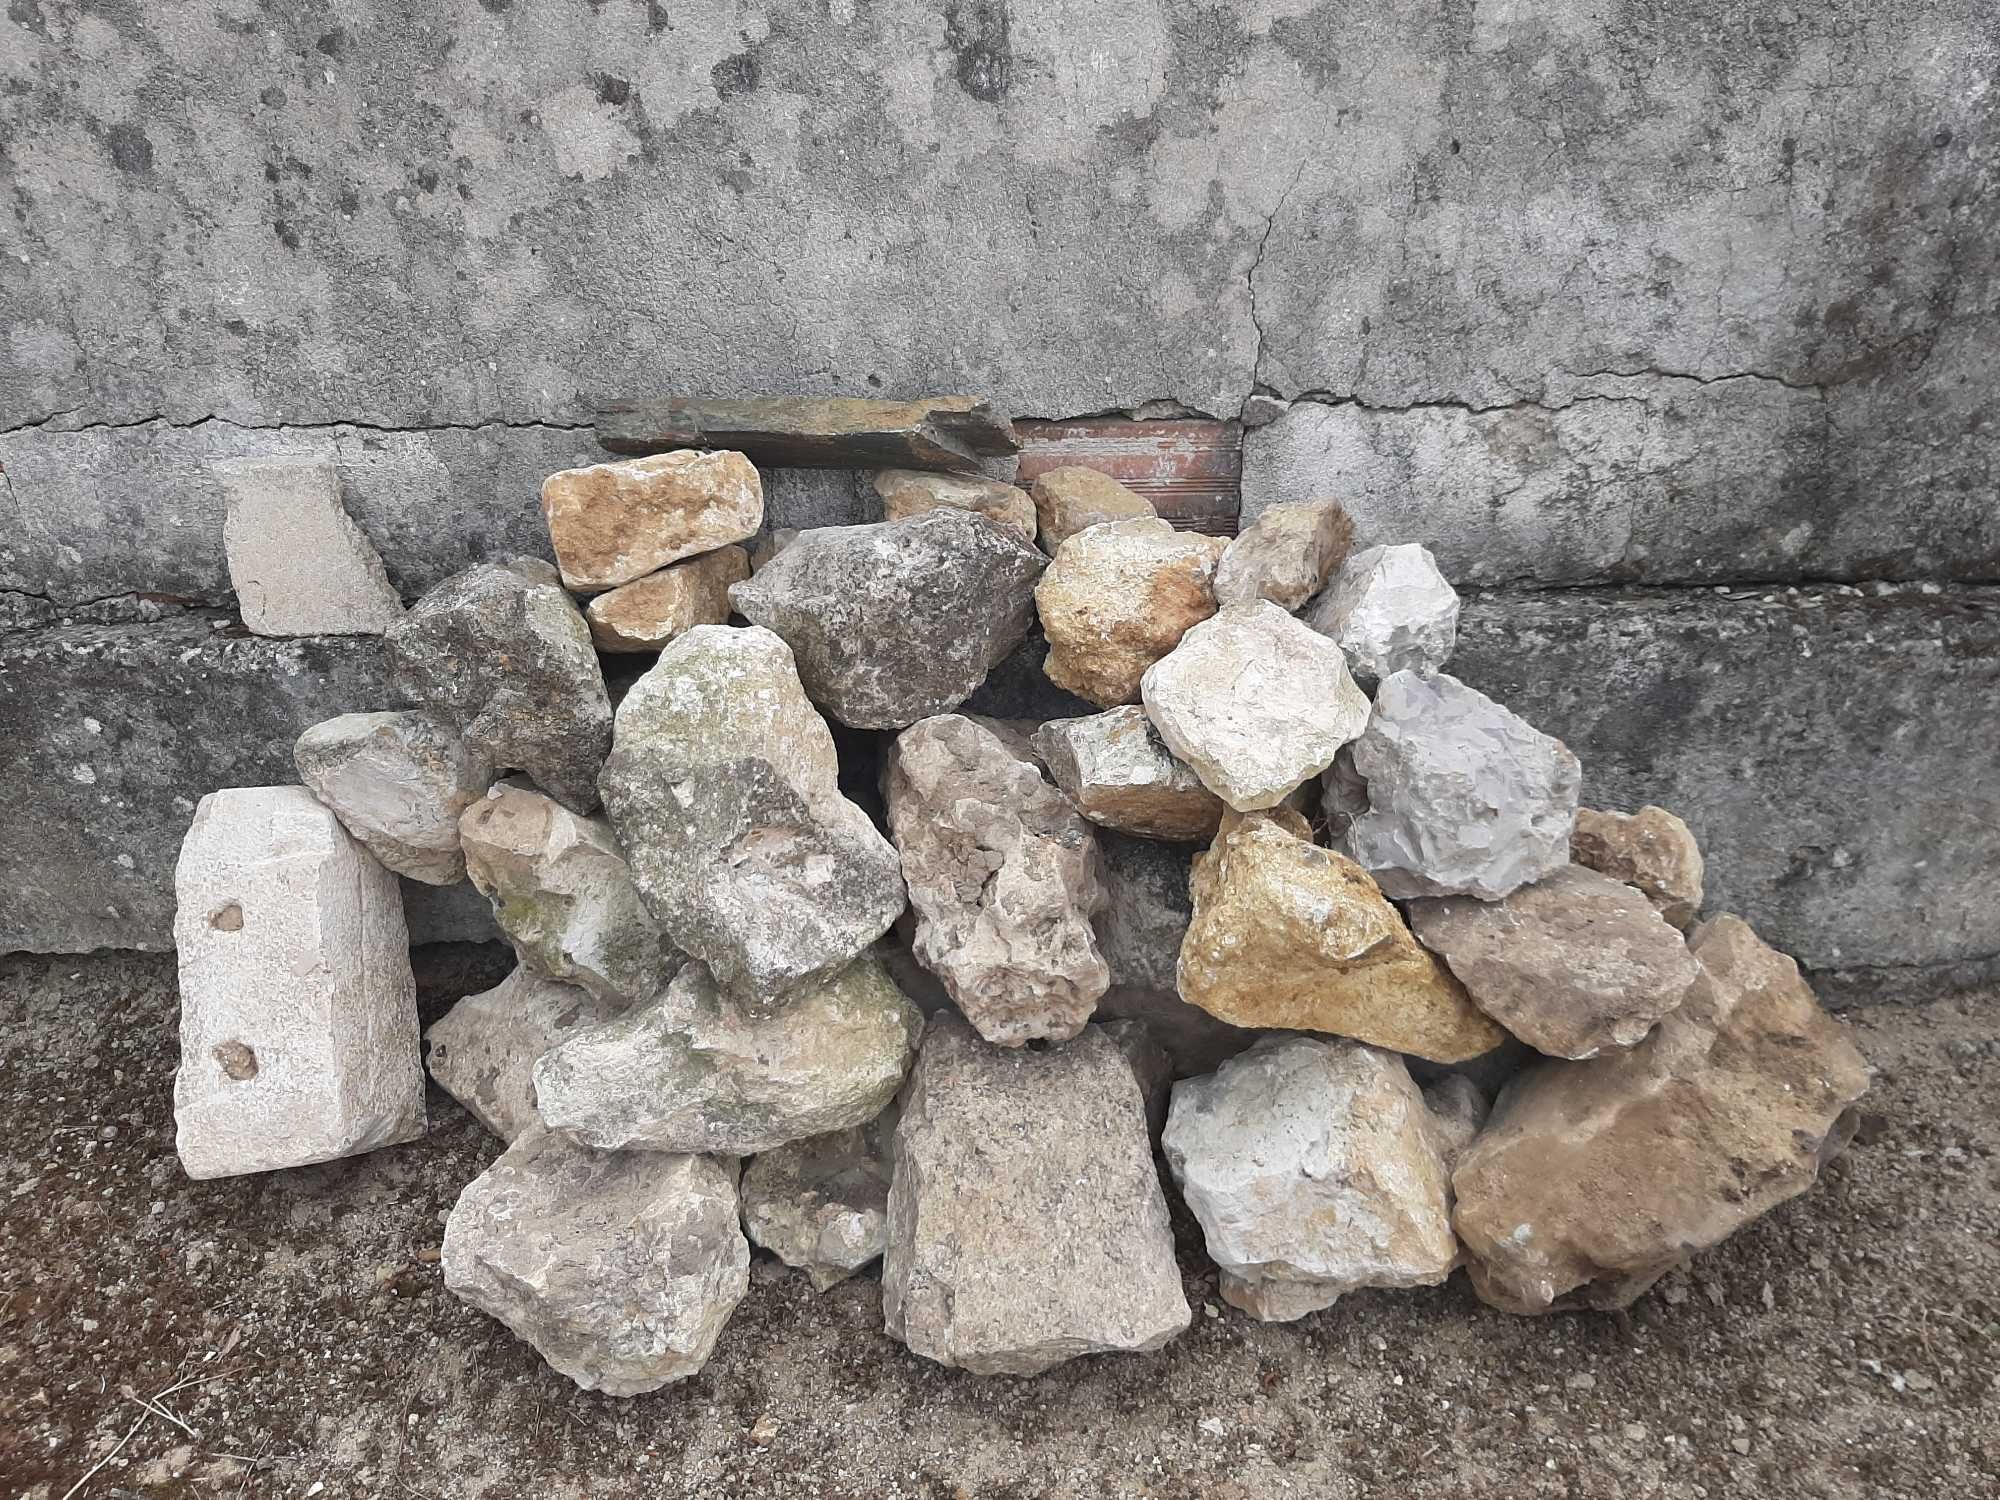 Pedras calçada Basalto Cubos e outras conforme fotos.